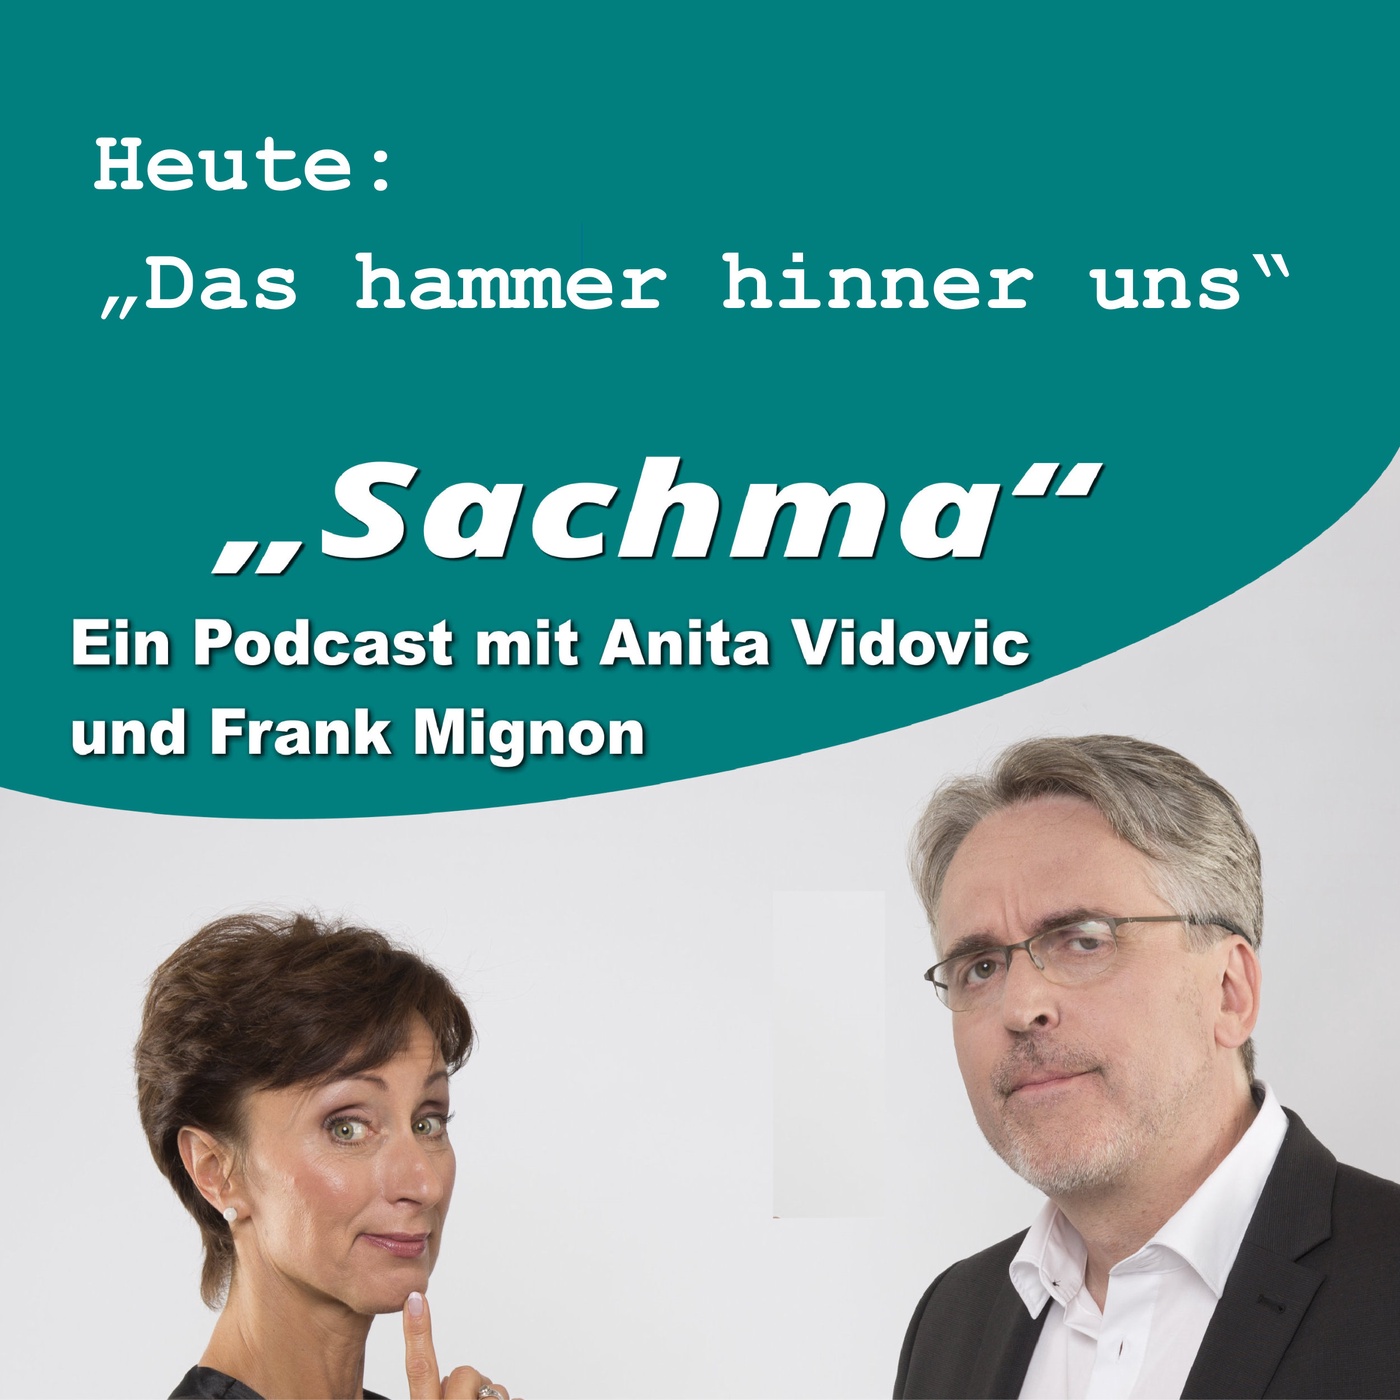 Sachma - Der Podcast - Das hammer hinner uns